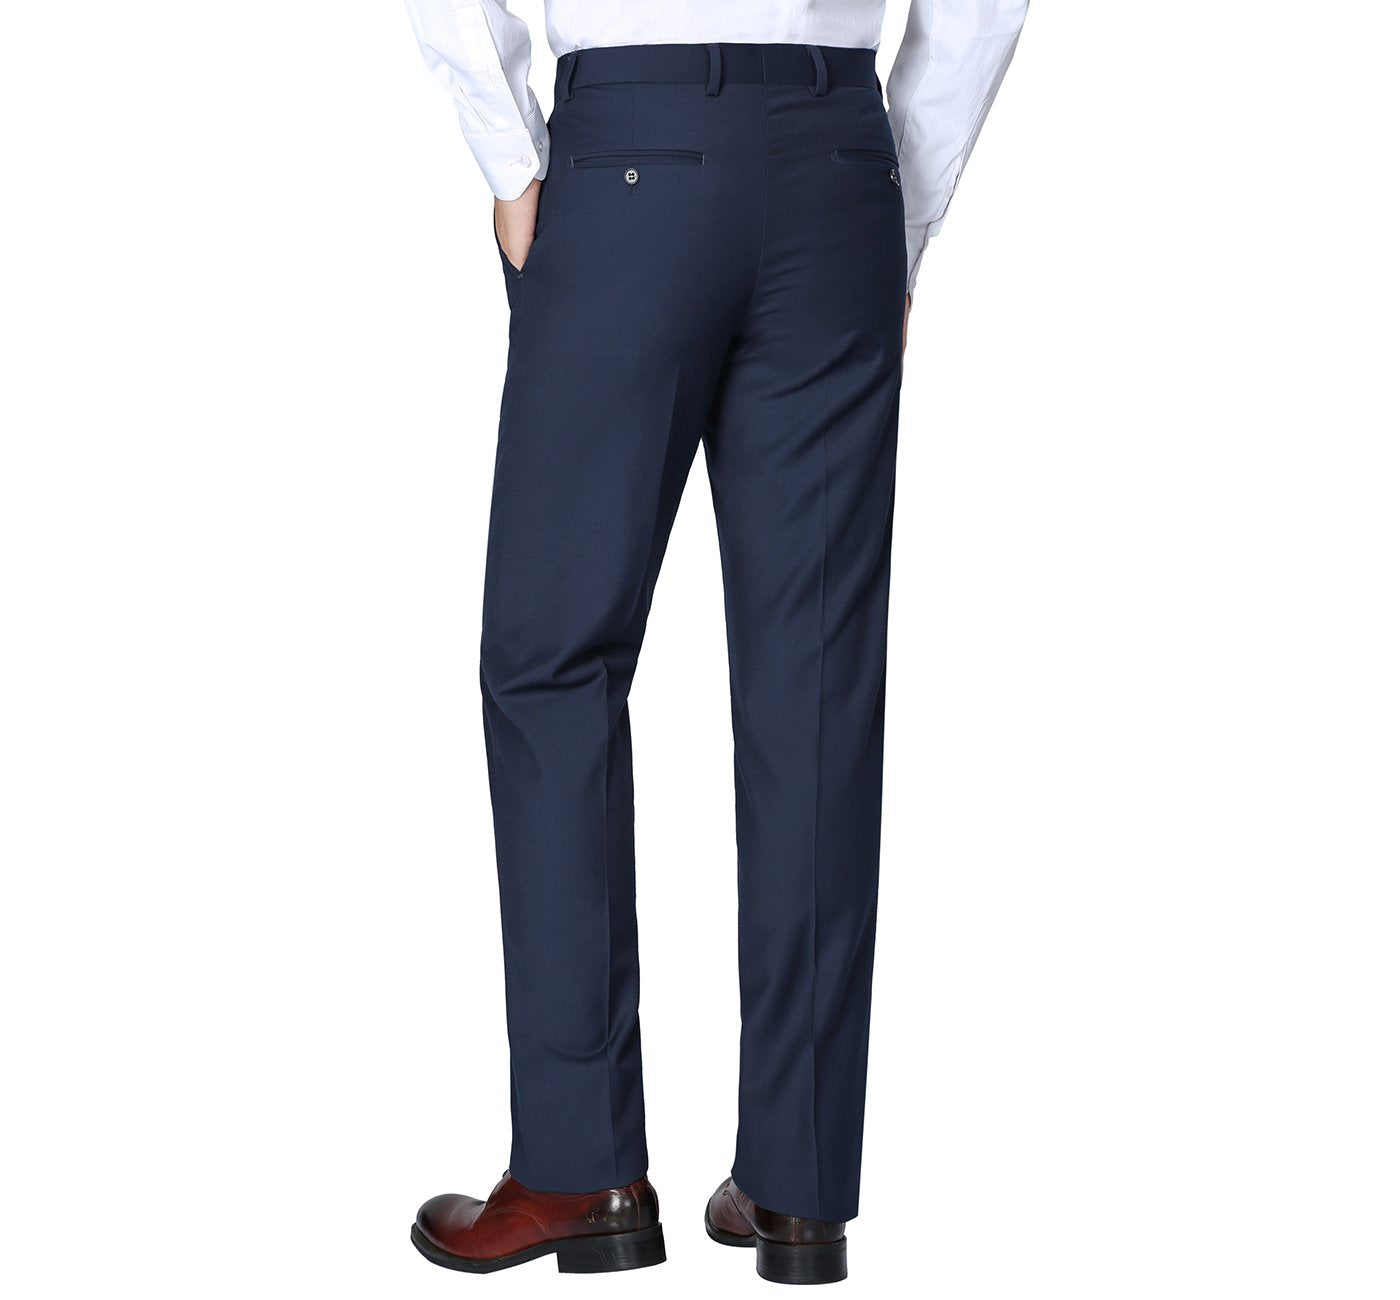 201-19 Men's Navy Flat Front Suit Separate Pants